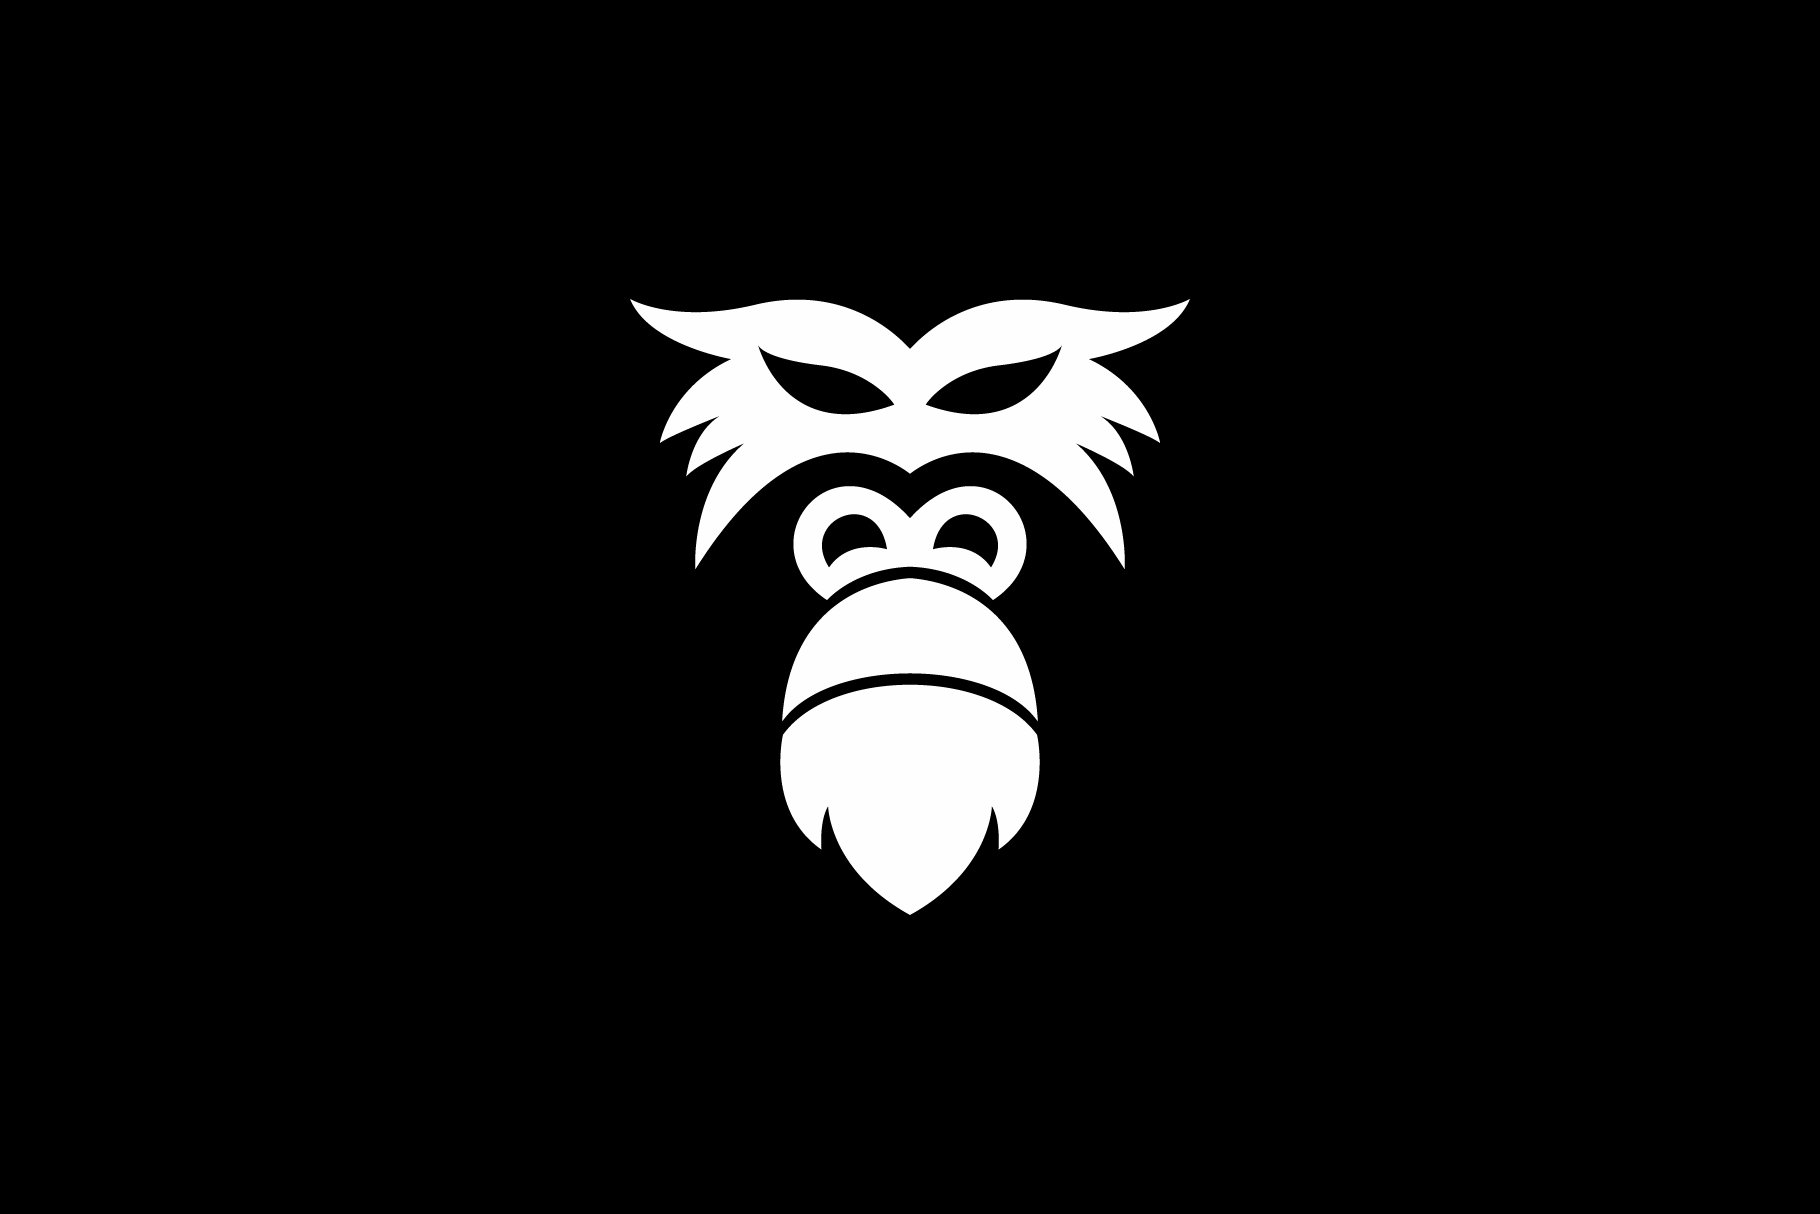 gorilla face logo cover image.